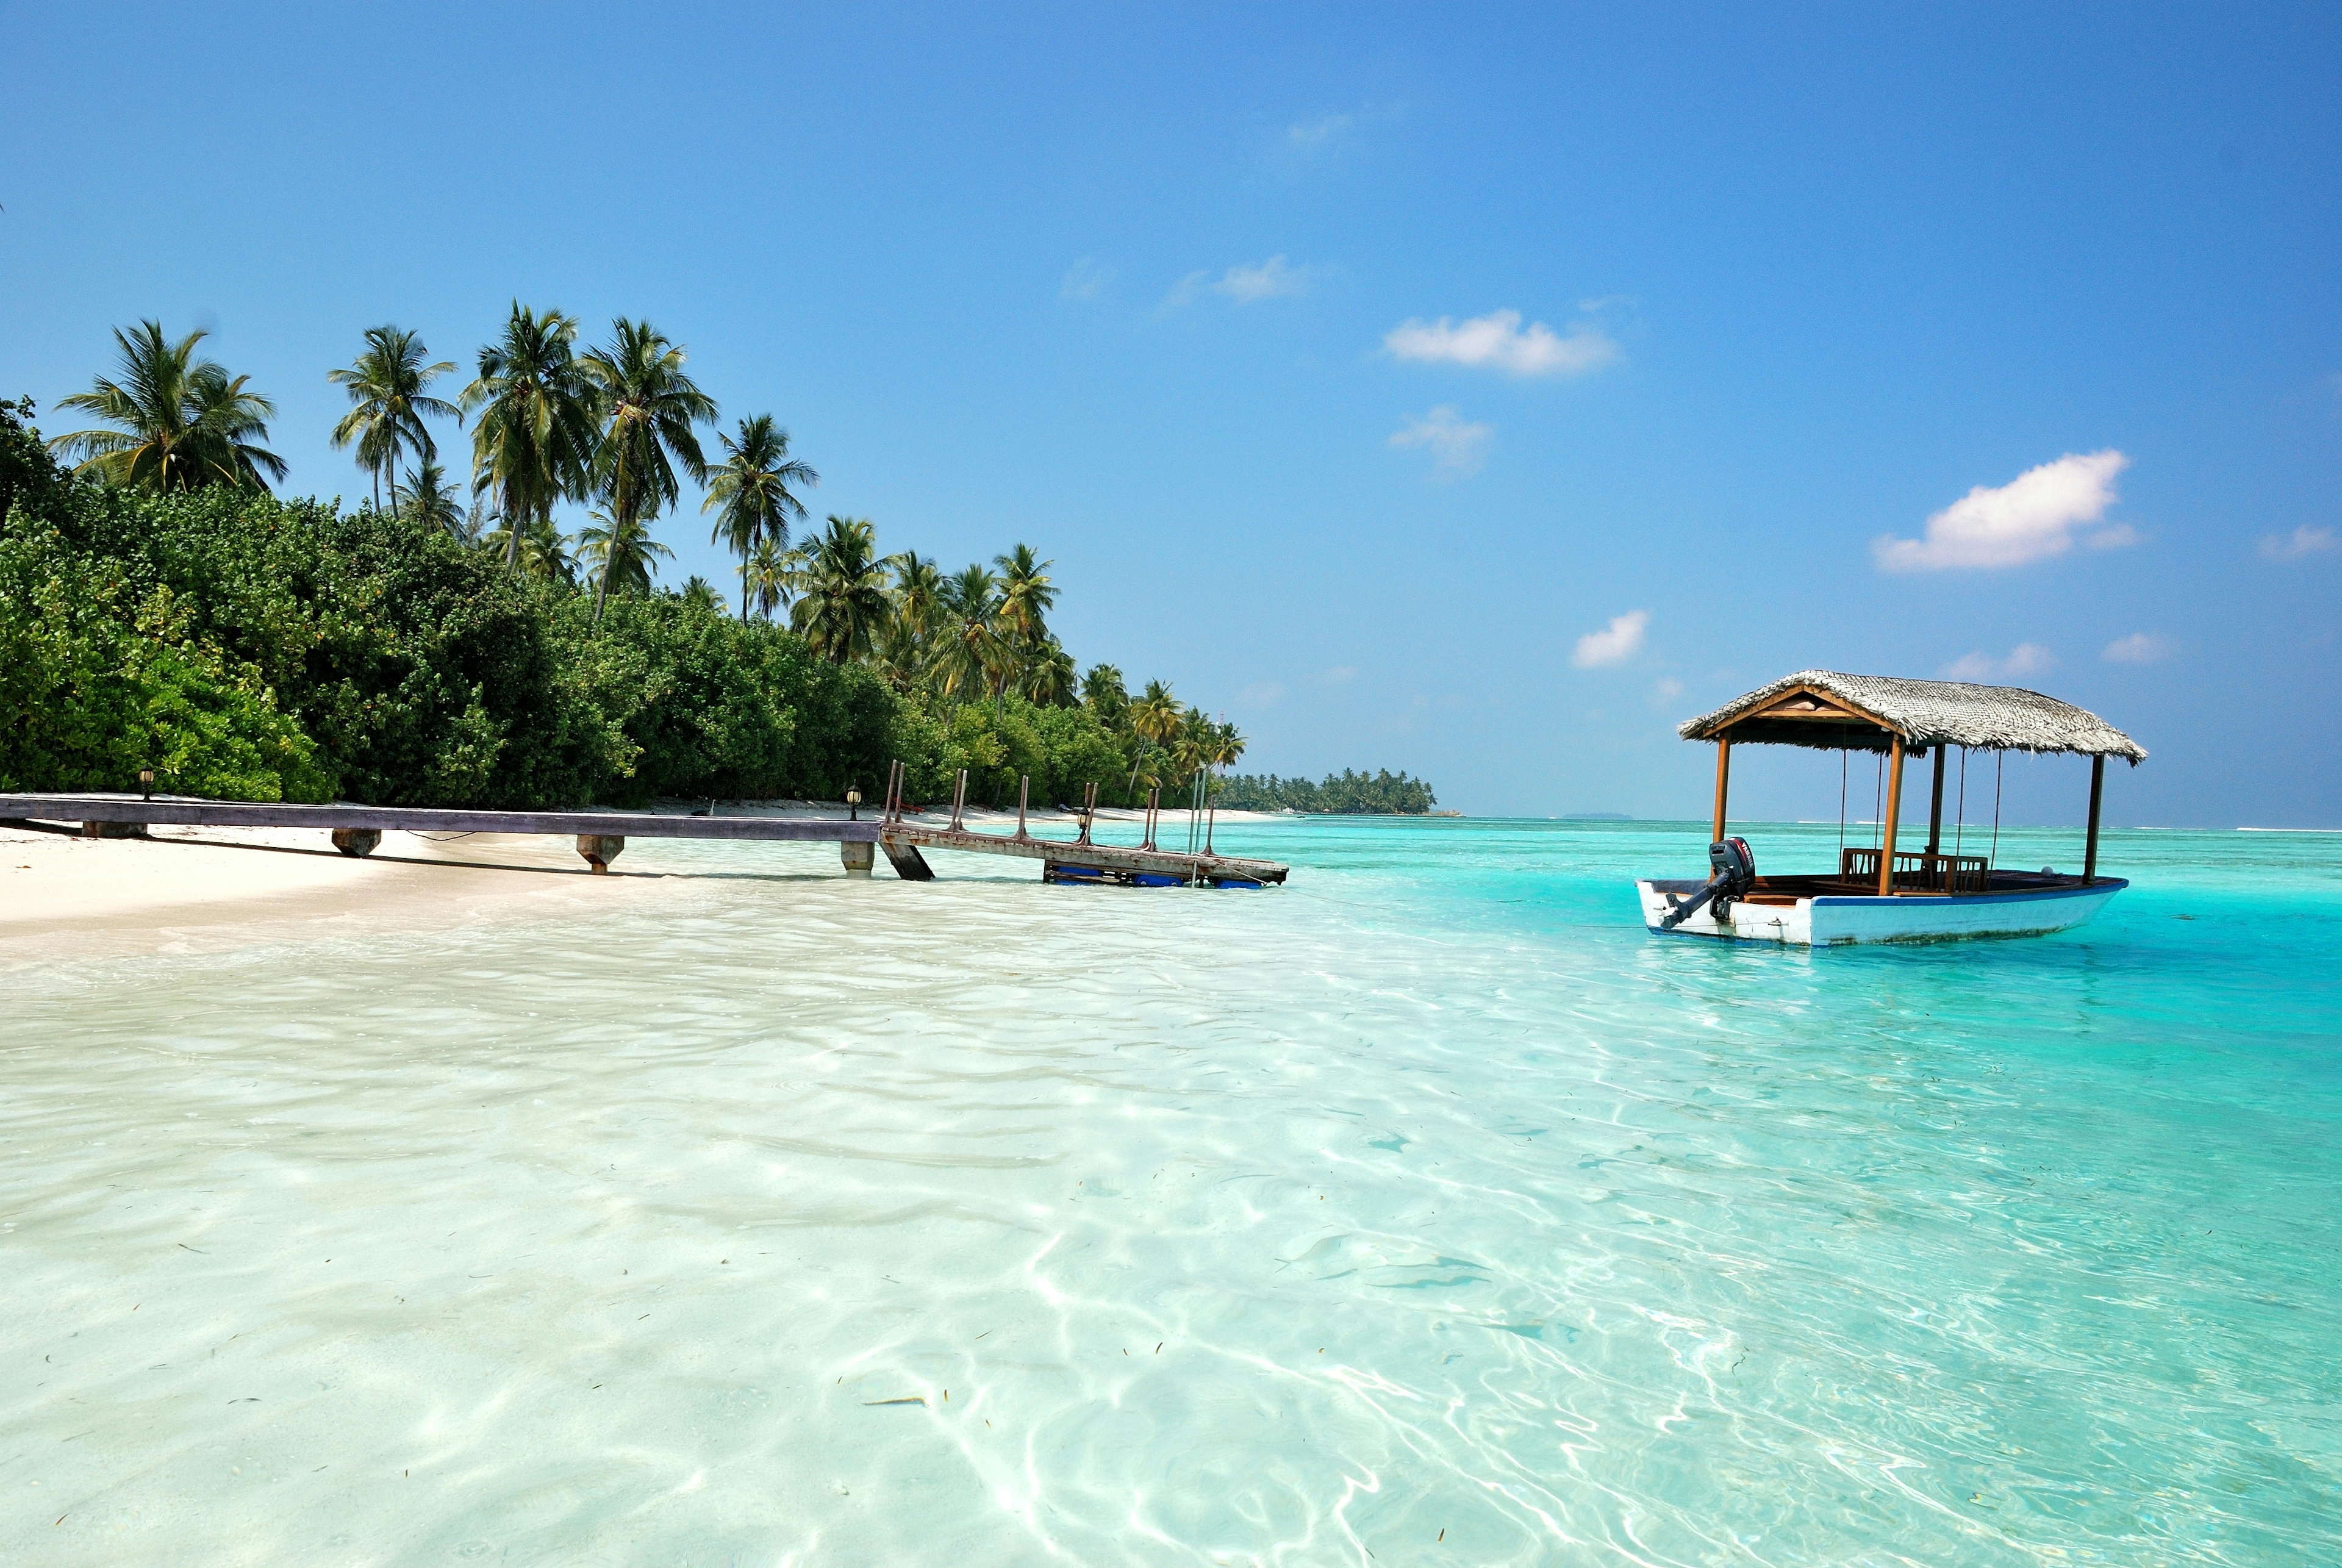 il mare cristallino delle maldive, ecco cosa sapere prima di partire per il viaggio in questa meta da sogno